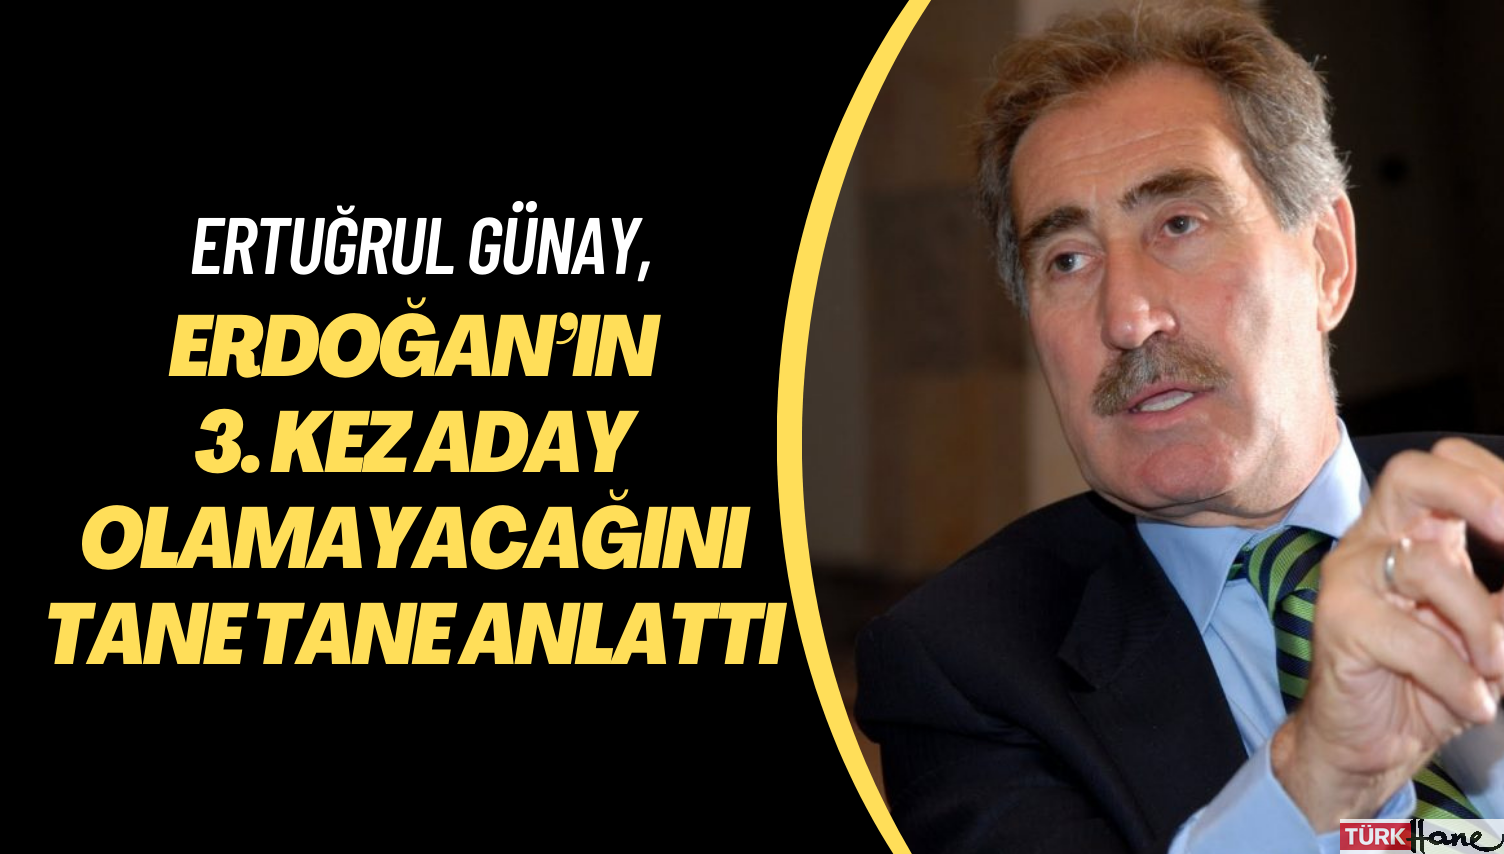 Ertuğrul Günay, Erdoğan’ın neden 3. kez aday olamayacağını tane tane anlattı